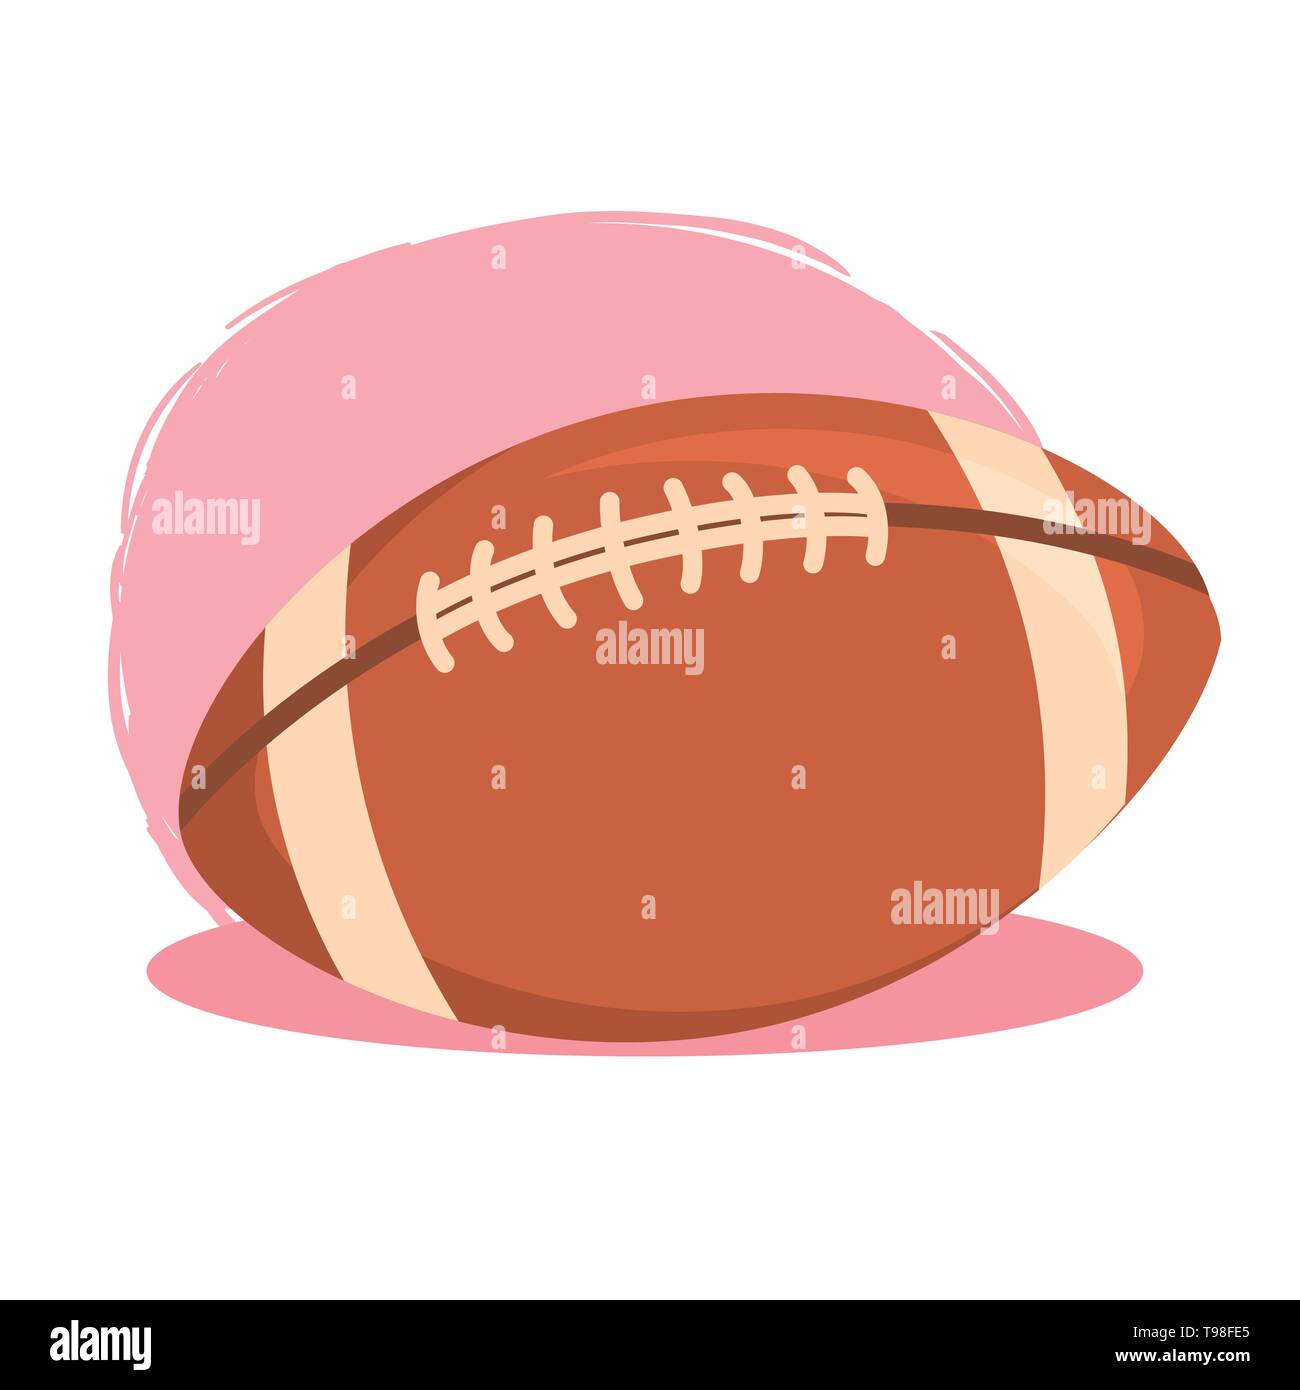 Pelota de Rugby Football Americano aislado sobre fondo blanco rosa ilustración vectorial Ilustración del Vector